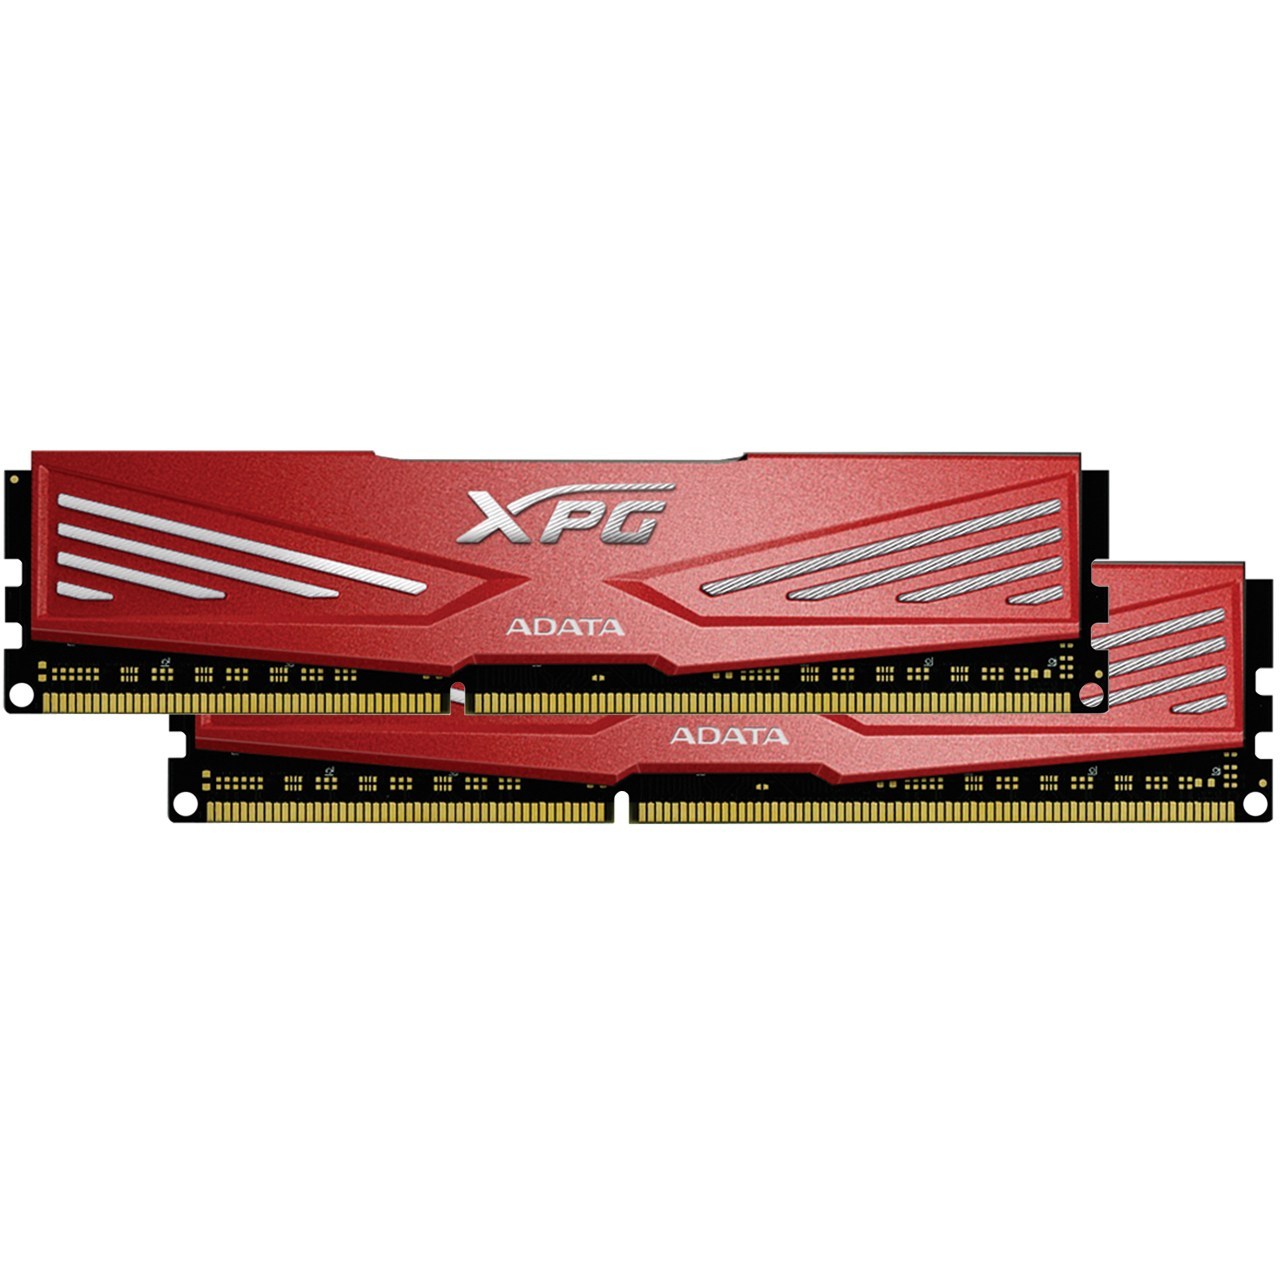 رم دسکتاپ DDR3 دو کاناله 2133 مگاهرتز CL10 ای دیتا مدل XPG V1 ظرفیت 8 گیگابایت